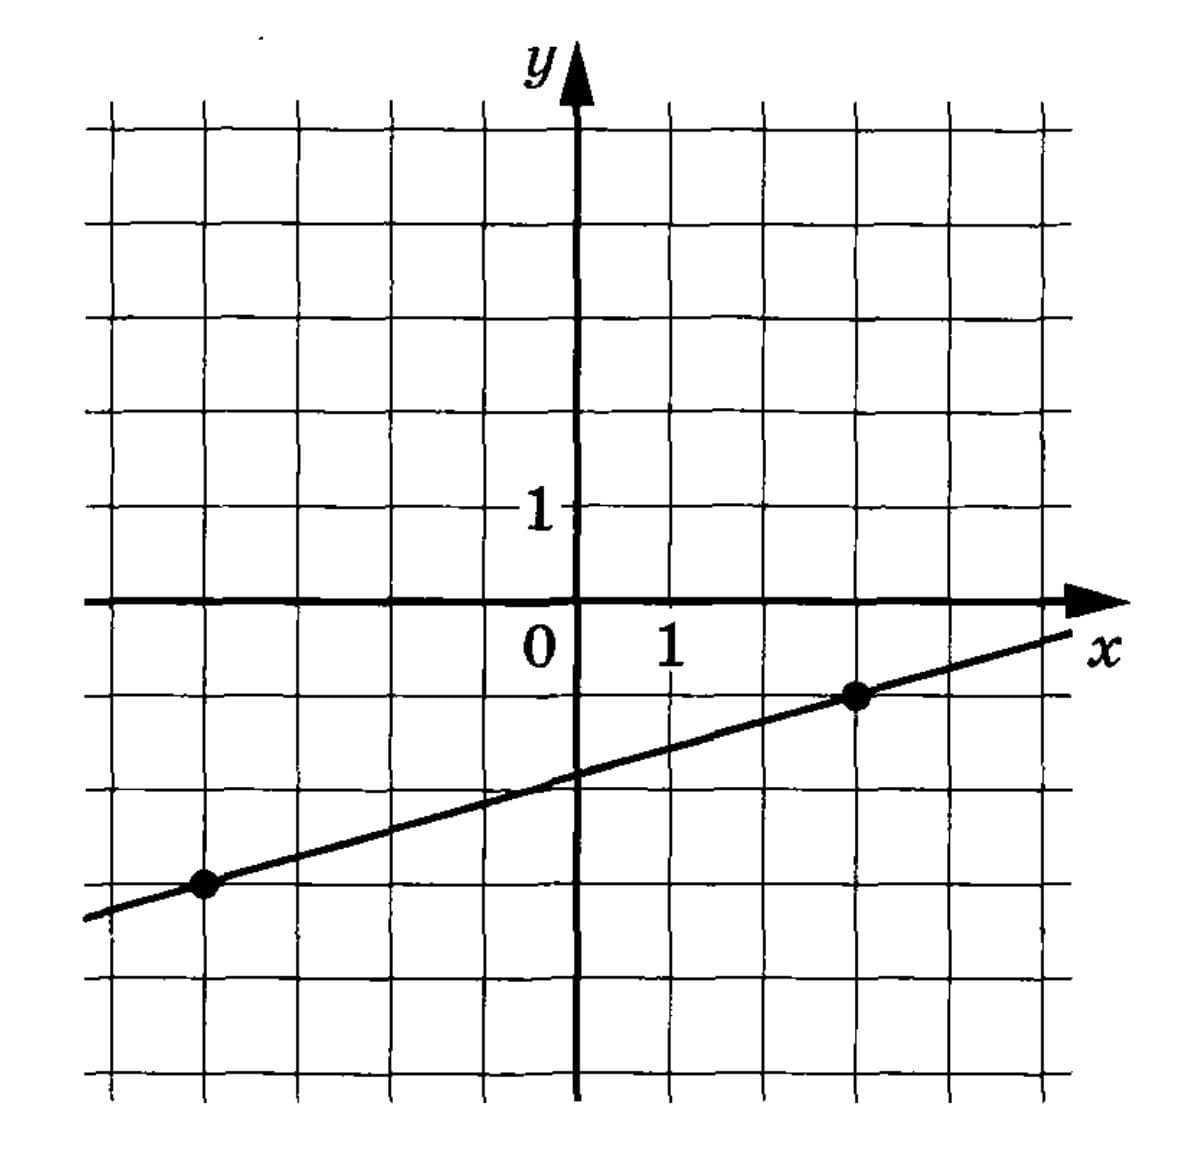 Функция y kx a x b. График функции FX. Напишите уравнение прямой изображенной на рисунке. На рисунке изображен график функции k/x+a. Что изображено на рисунке?.